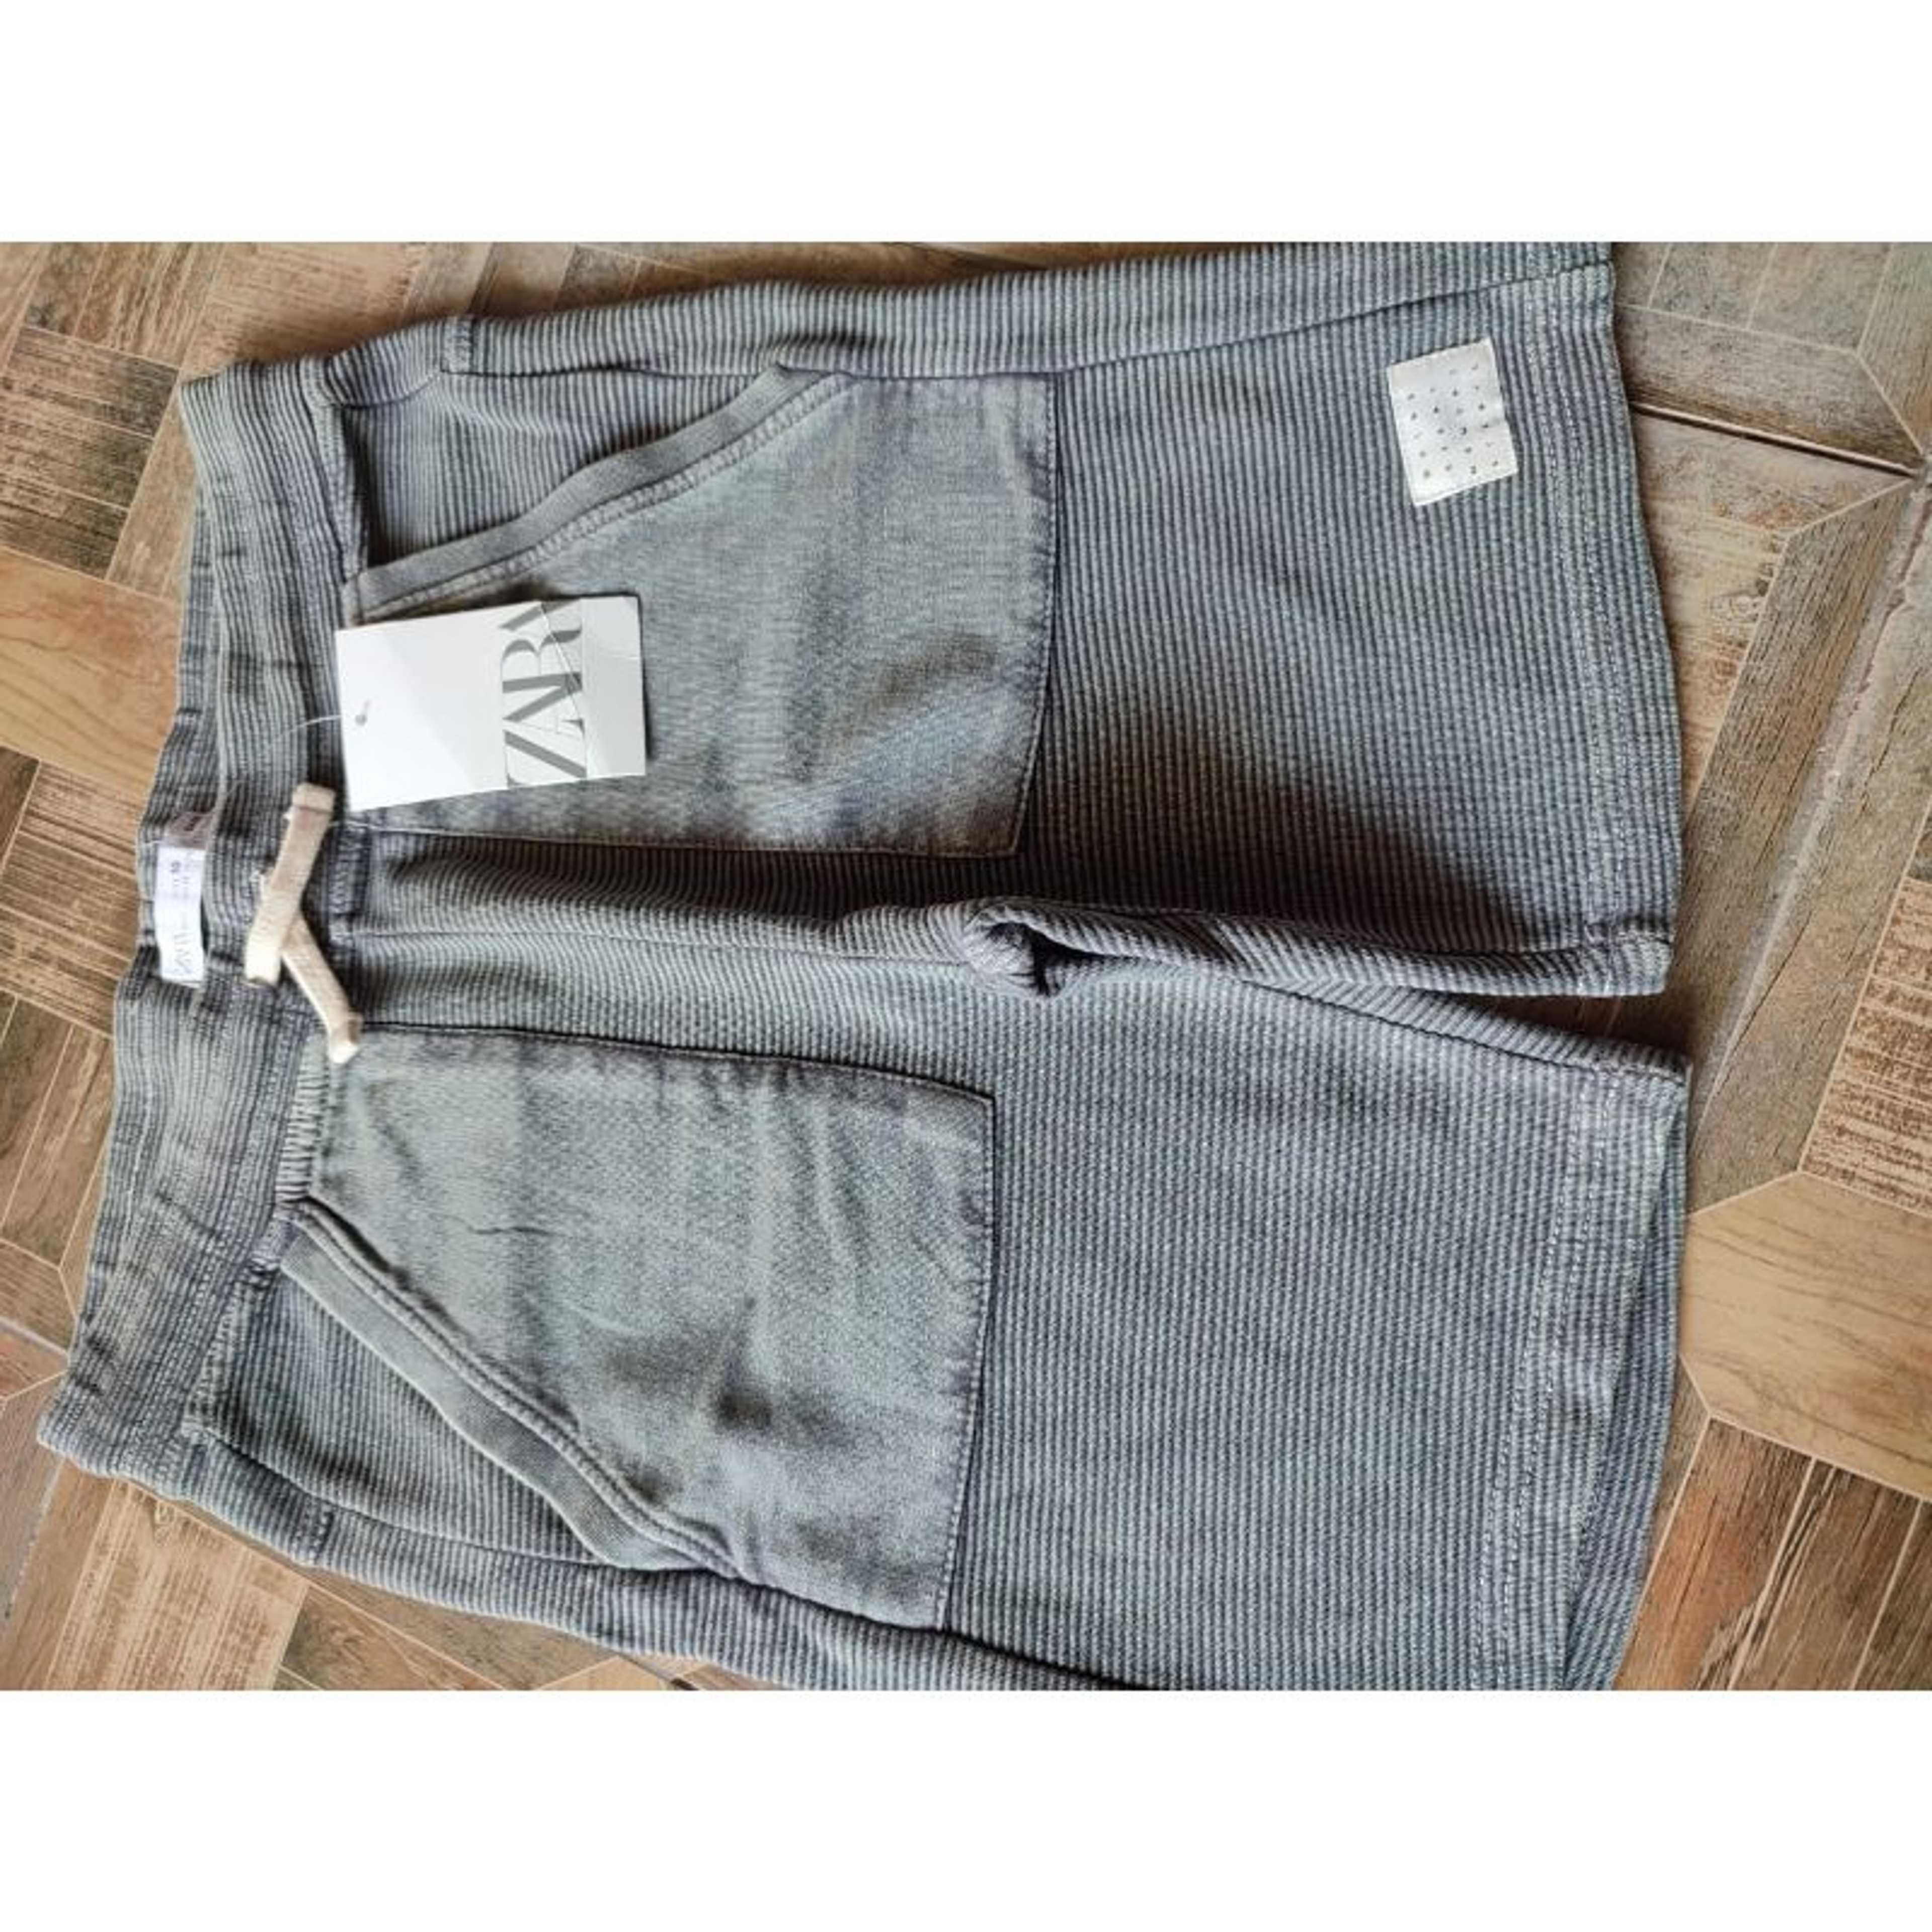 Boys shorts In grey color